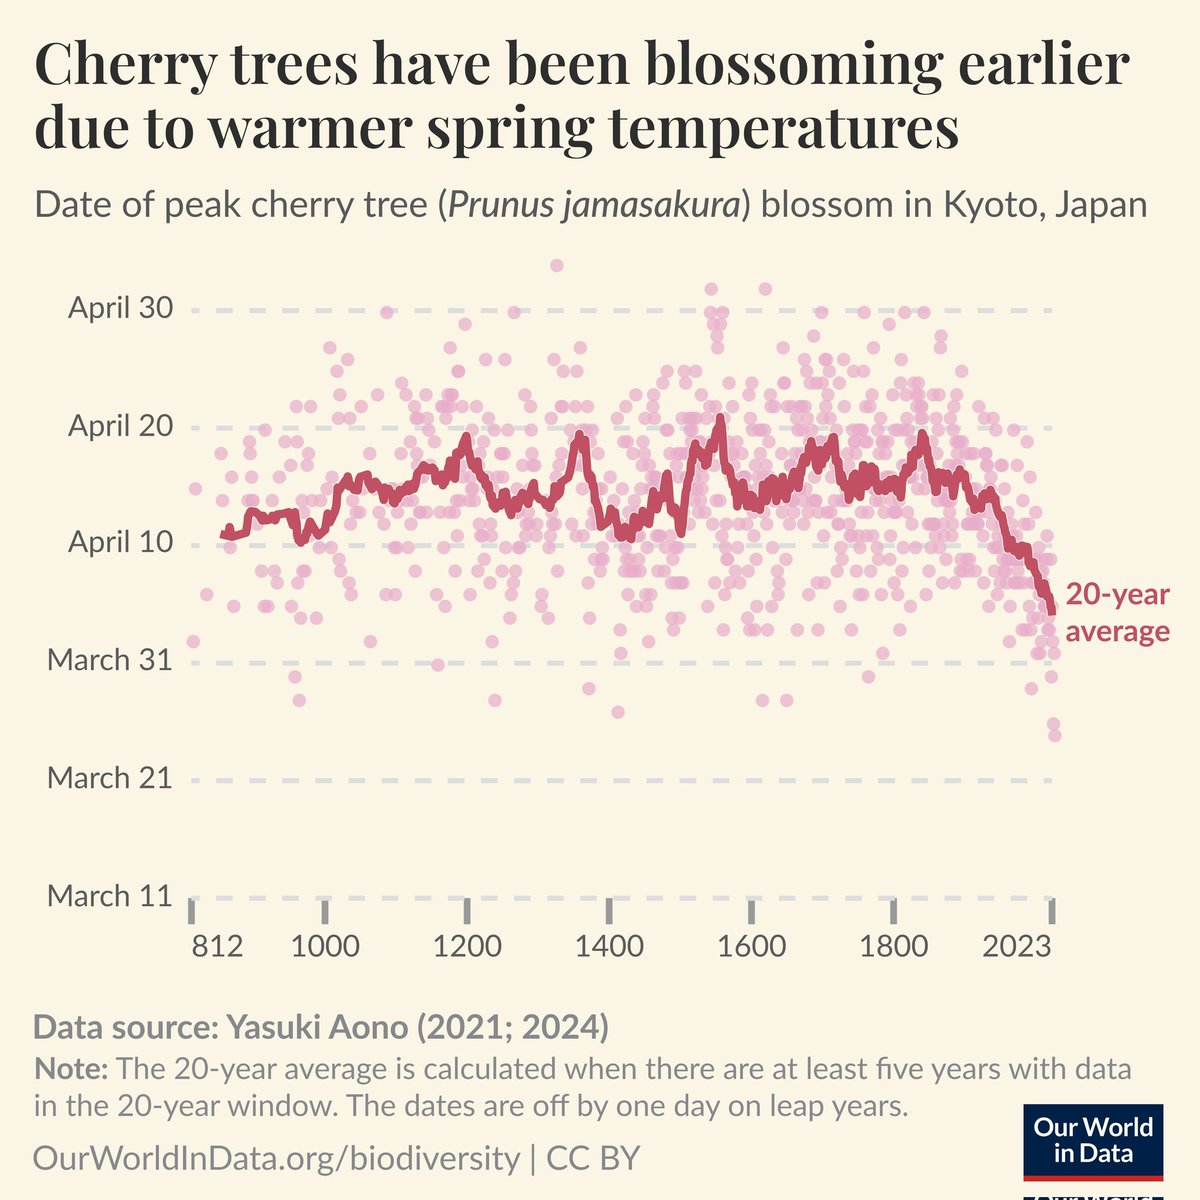 Los japoneses llevan 1200 años anotando la fecha de floración de los cerezos. Vean cómo esos arbolitos se han unido a la conspiración del cambio climático para imponernos la Agenda 2030.